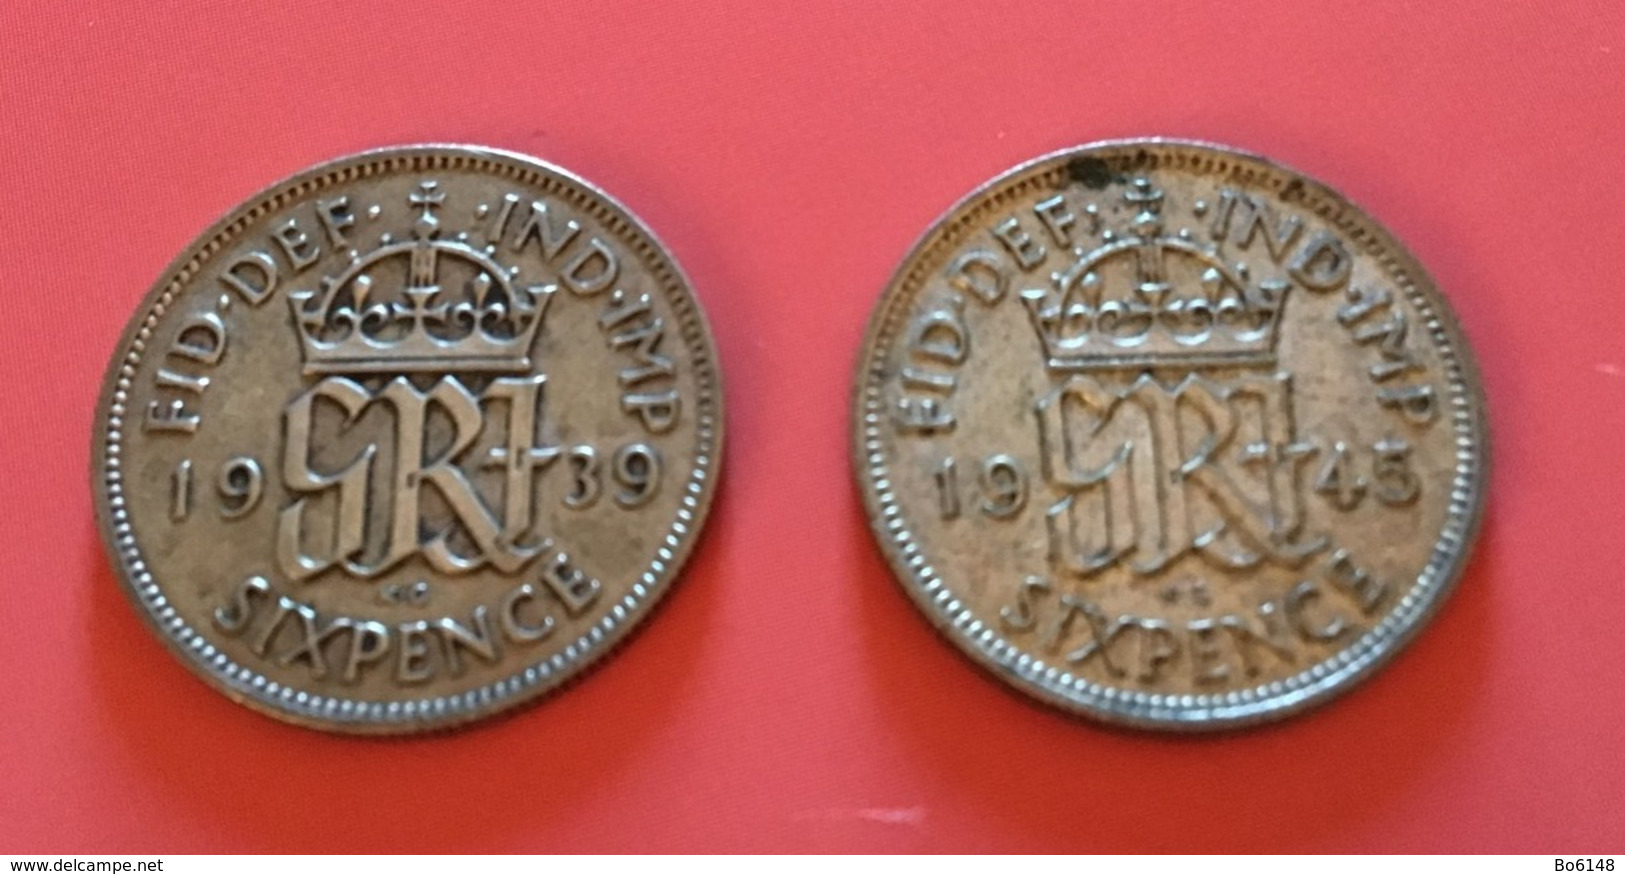 GRAN BRETAGNA  - 1939 E 1945 - 2  Monete Da 6 PENCE - Giorgio V - H. 6 Pence